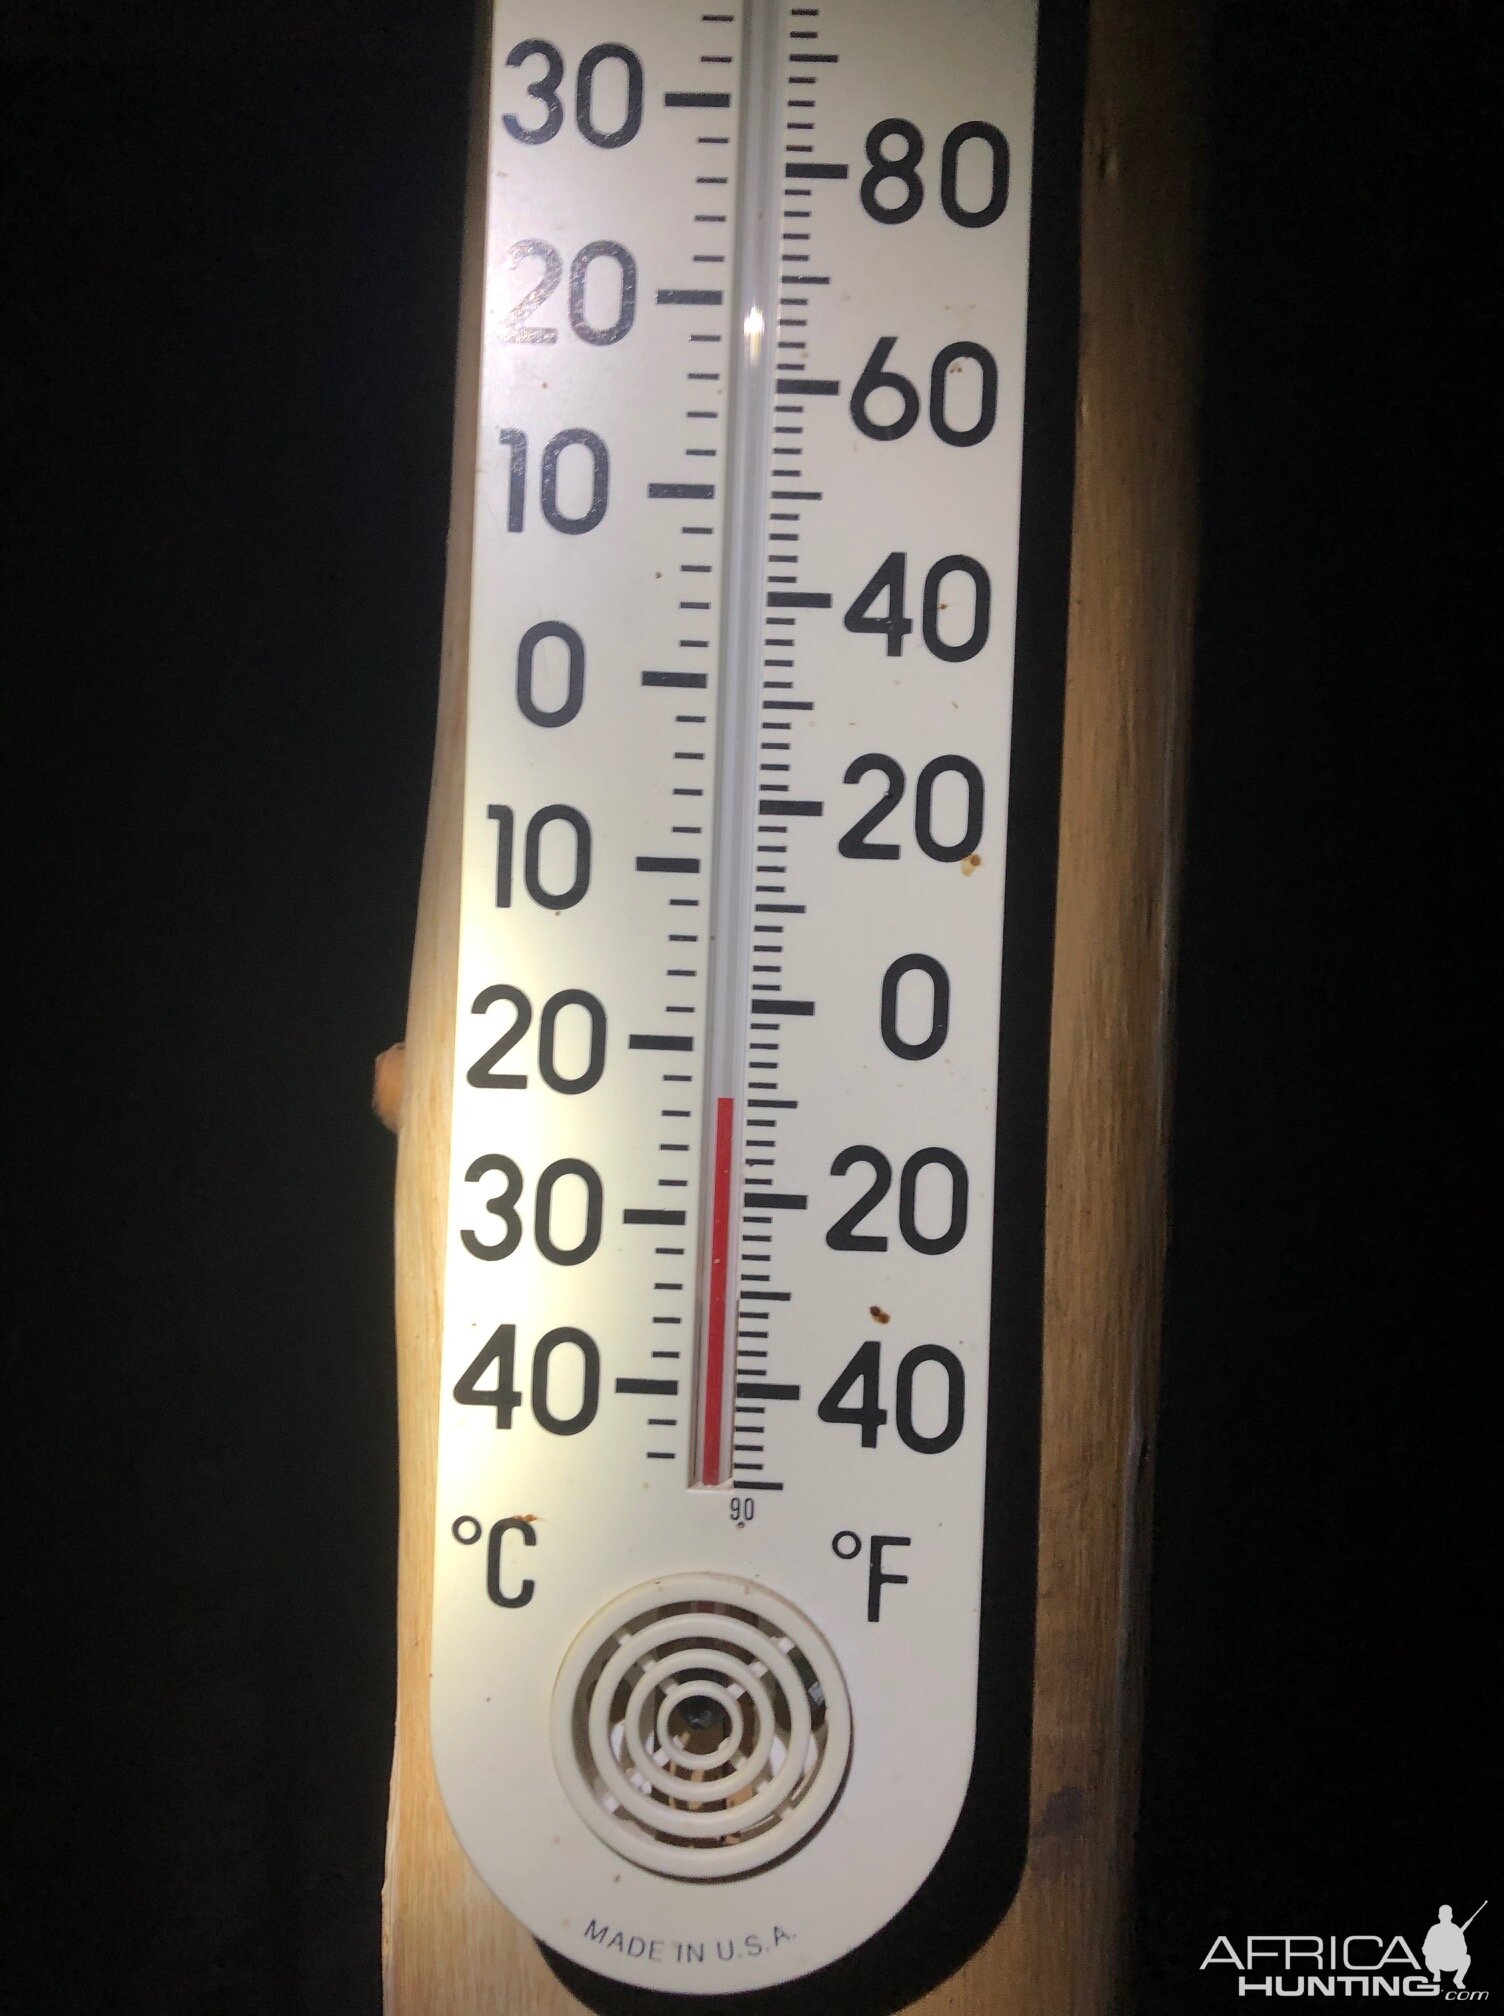 Temperature in Montana